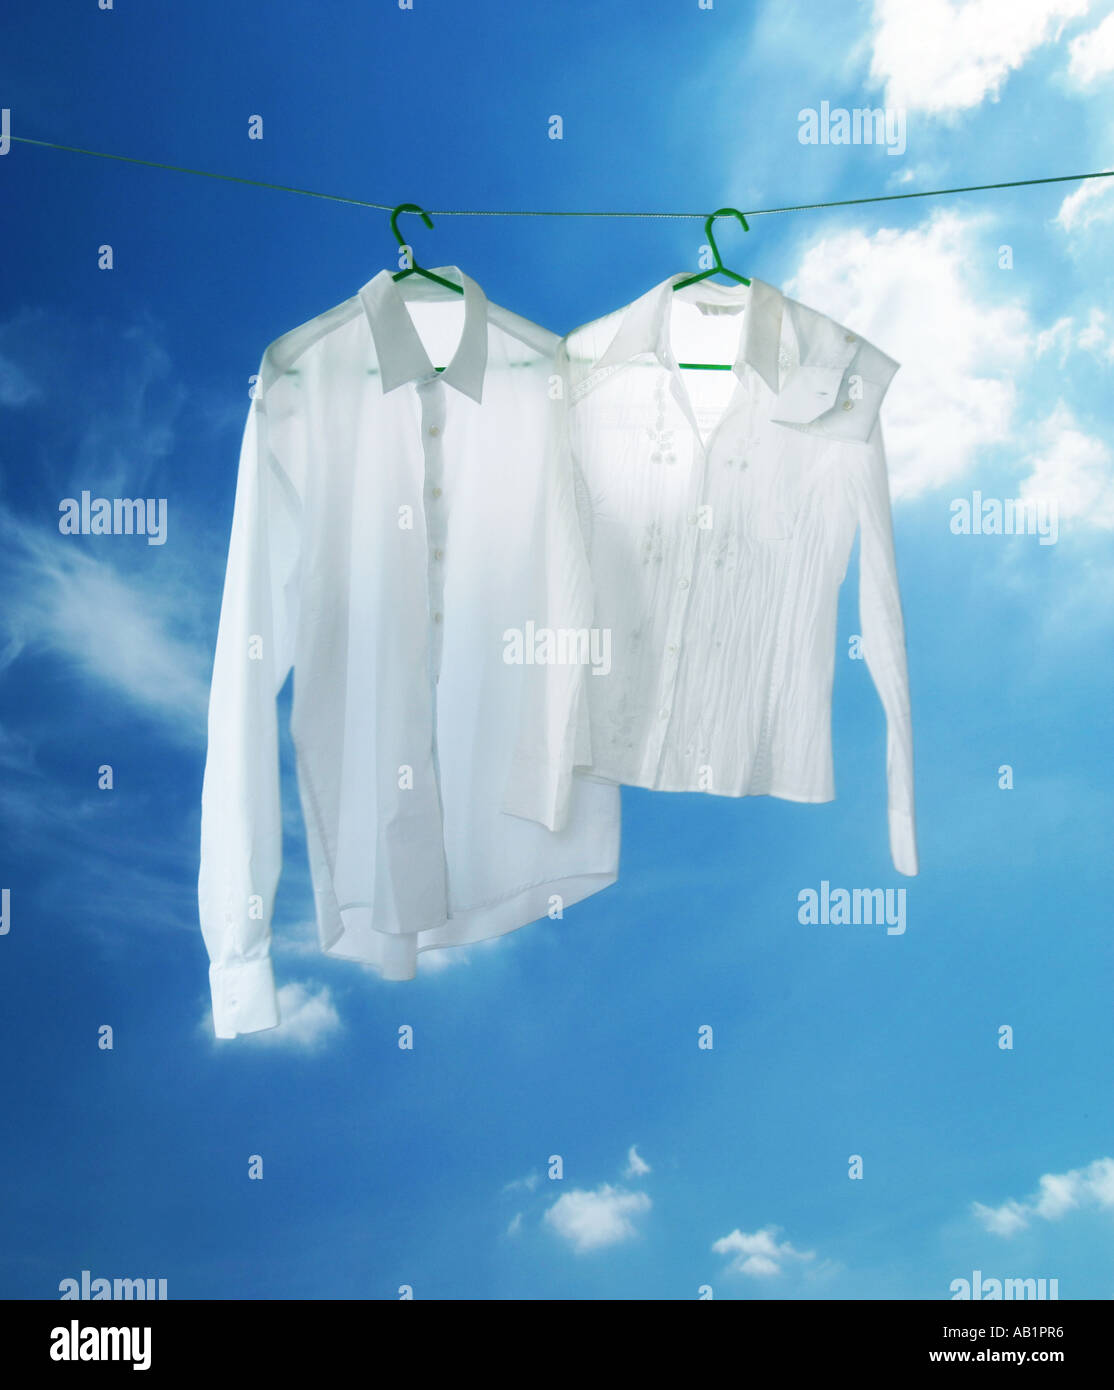 zwei weiße Hemden auf eine Wäscheleine Stockfoto